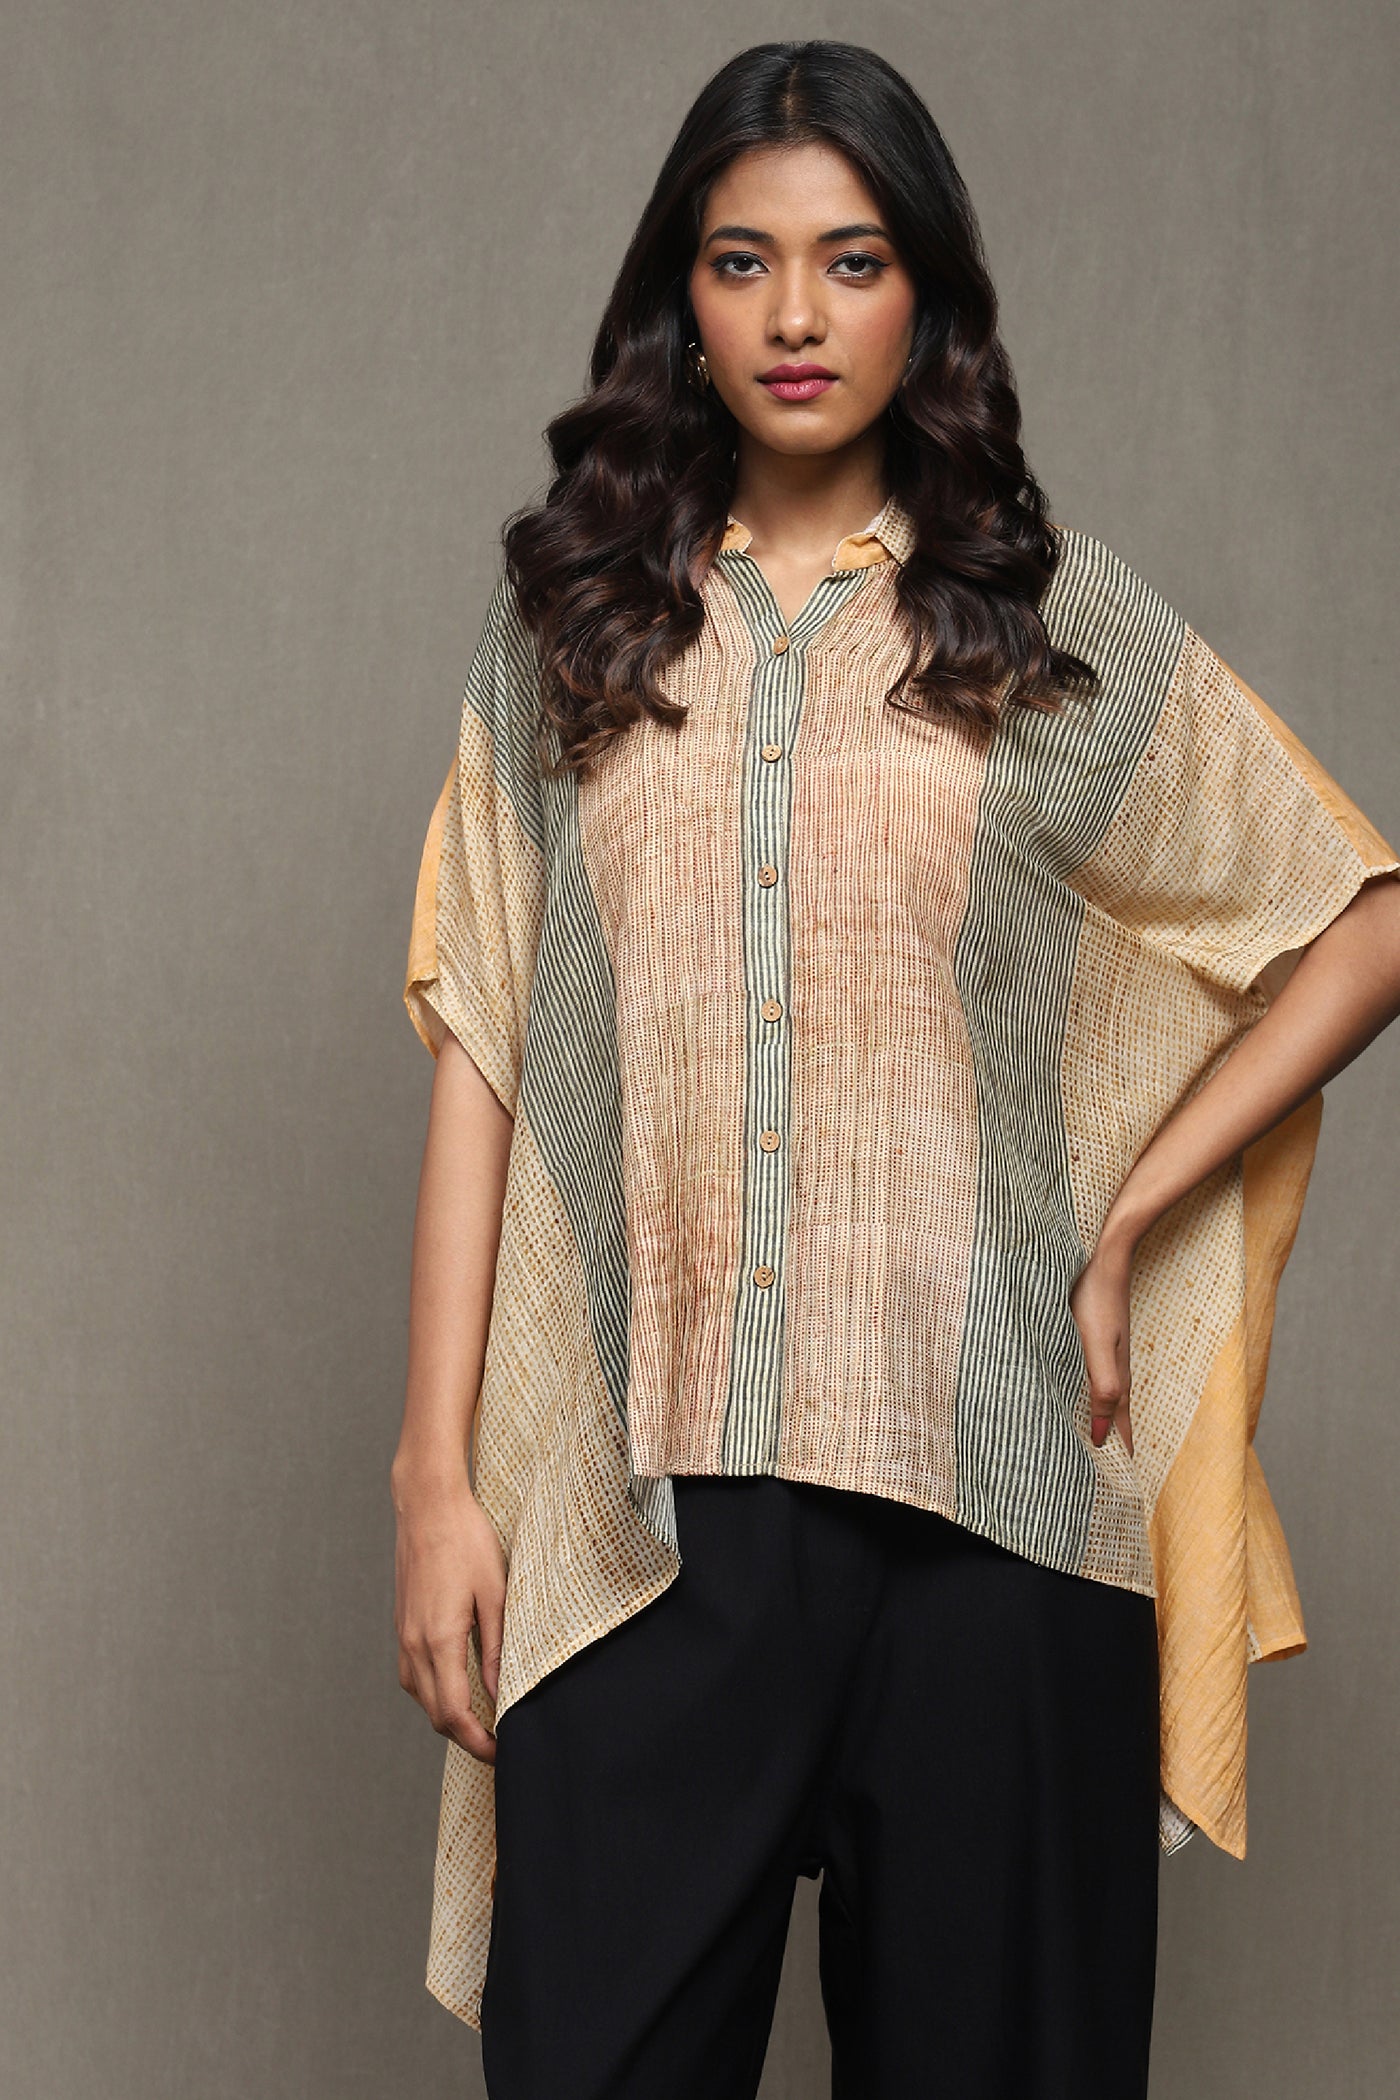 Ritu Kumar Apricot Printed Shirt indian designer wear online shopping melange singapore